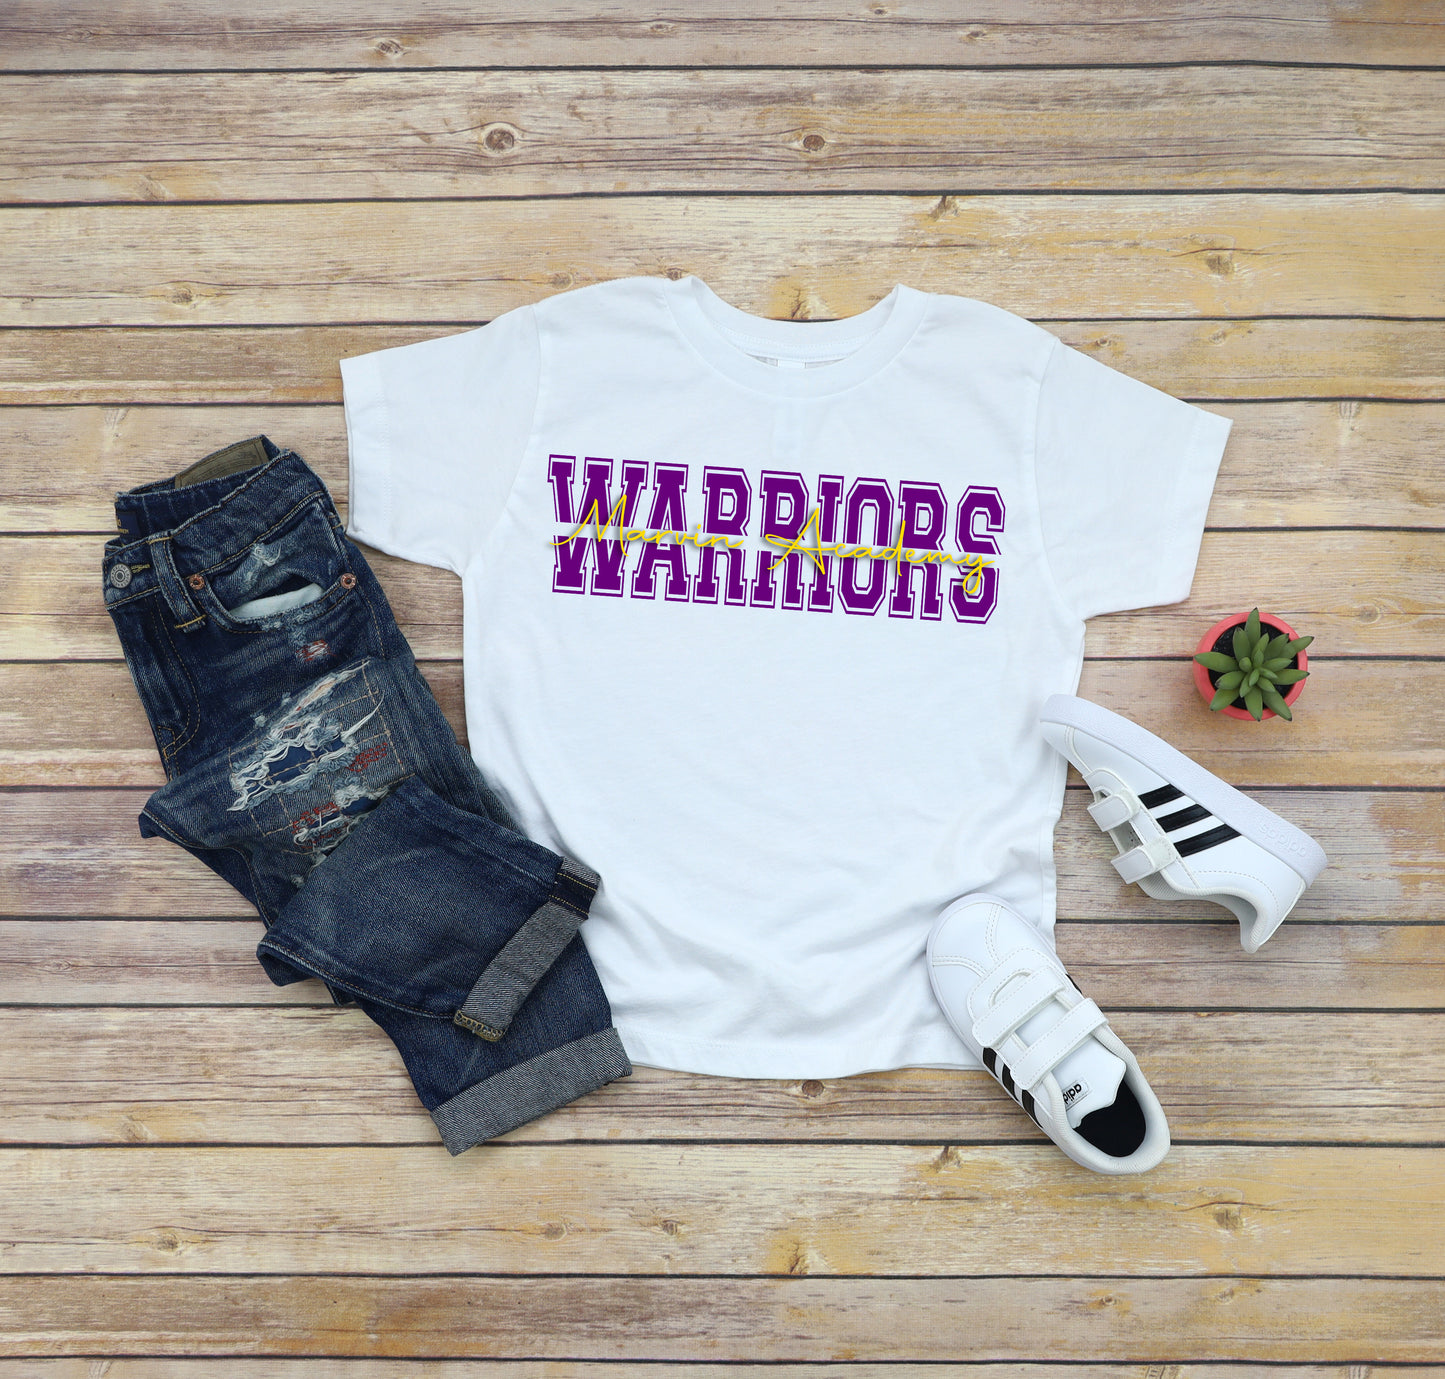 Marvin Academy Warriors Shirt